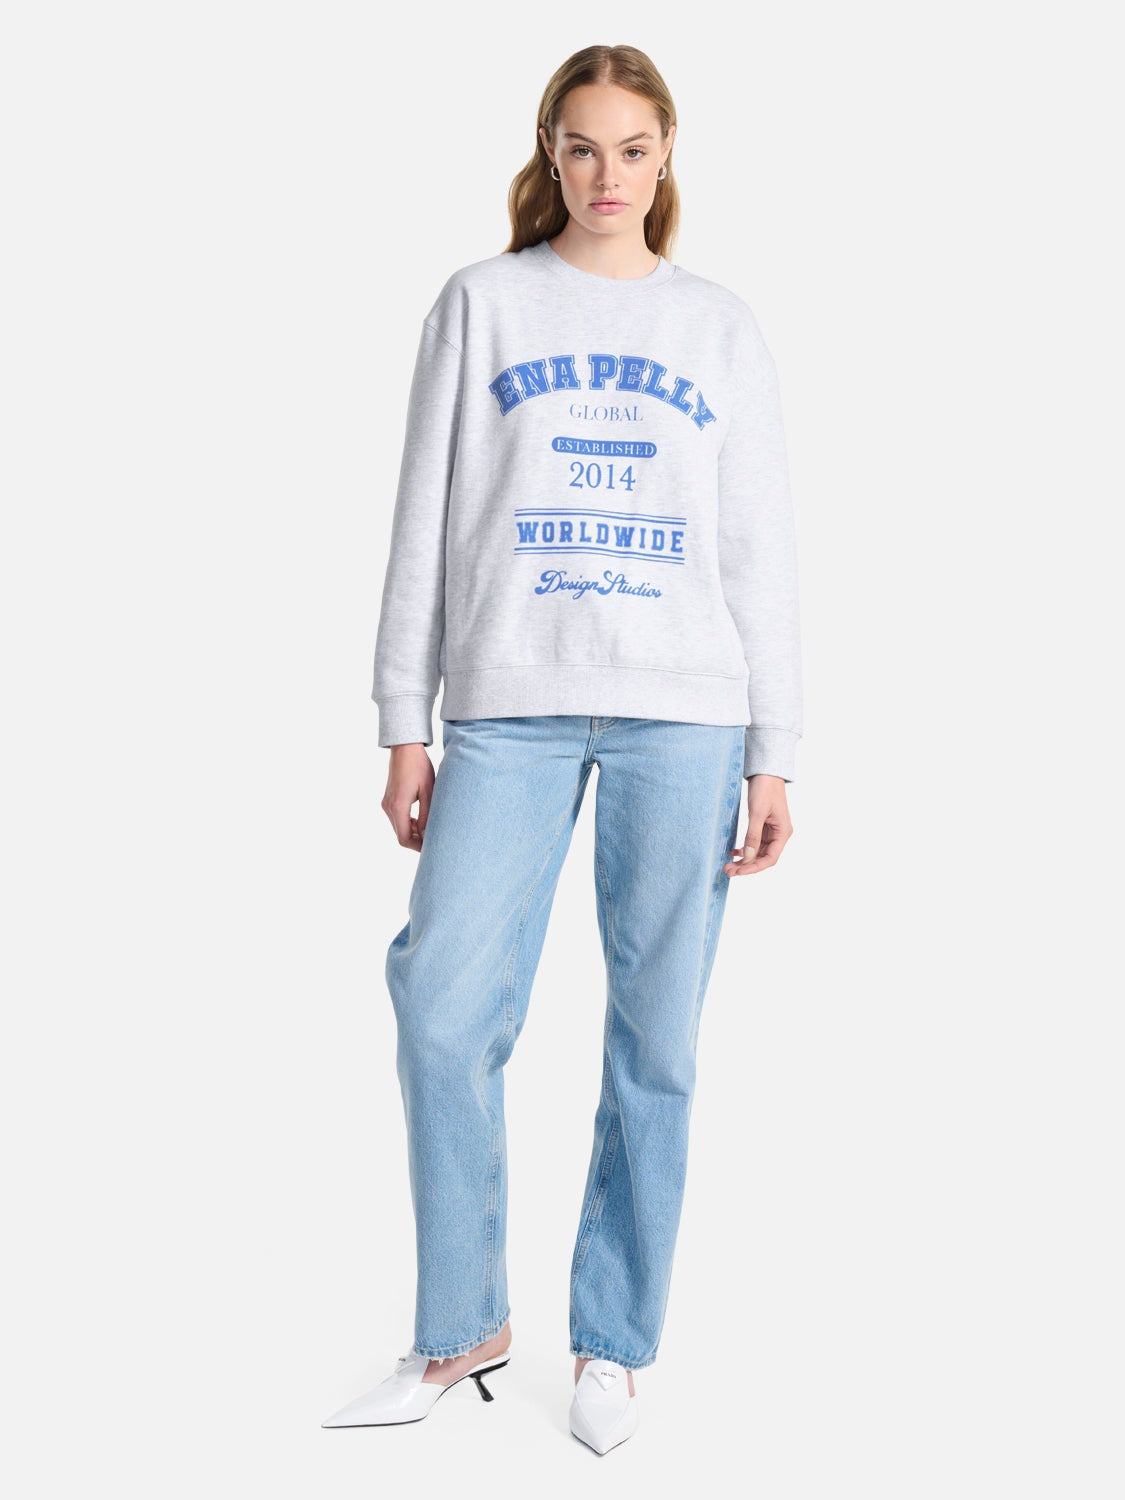 Ena Pelly | Worldwide Oversized Sweater